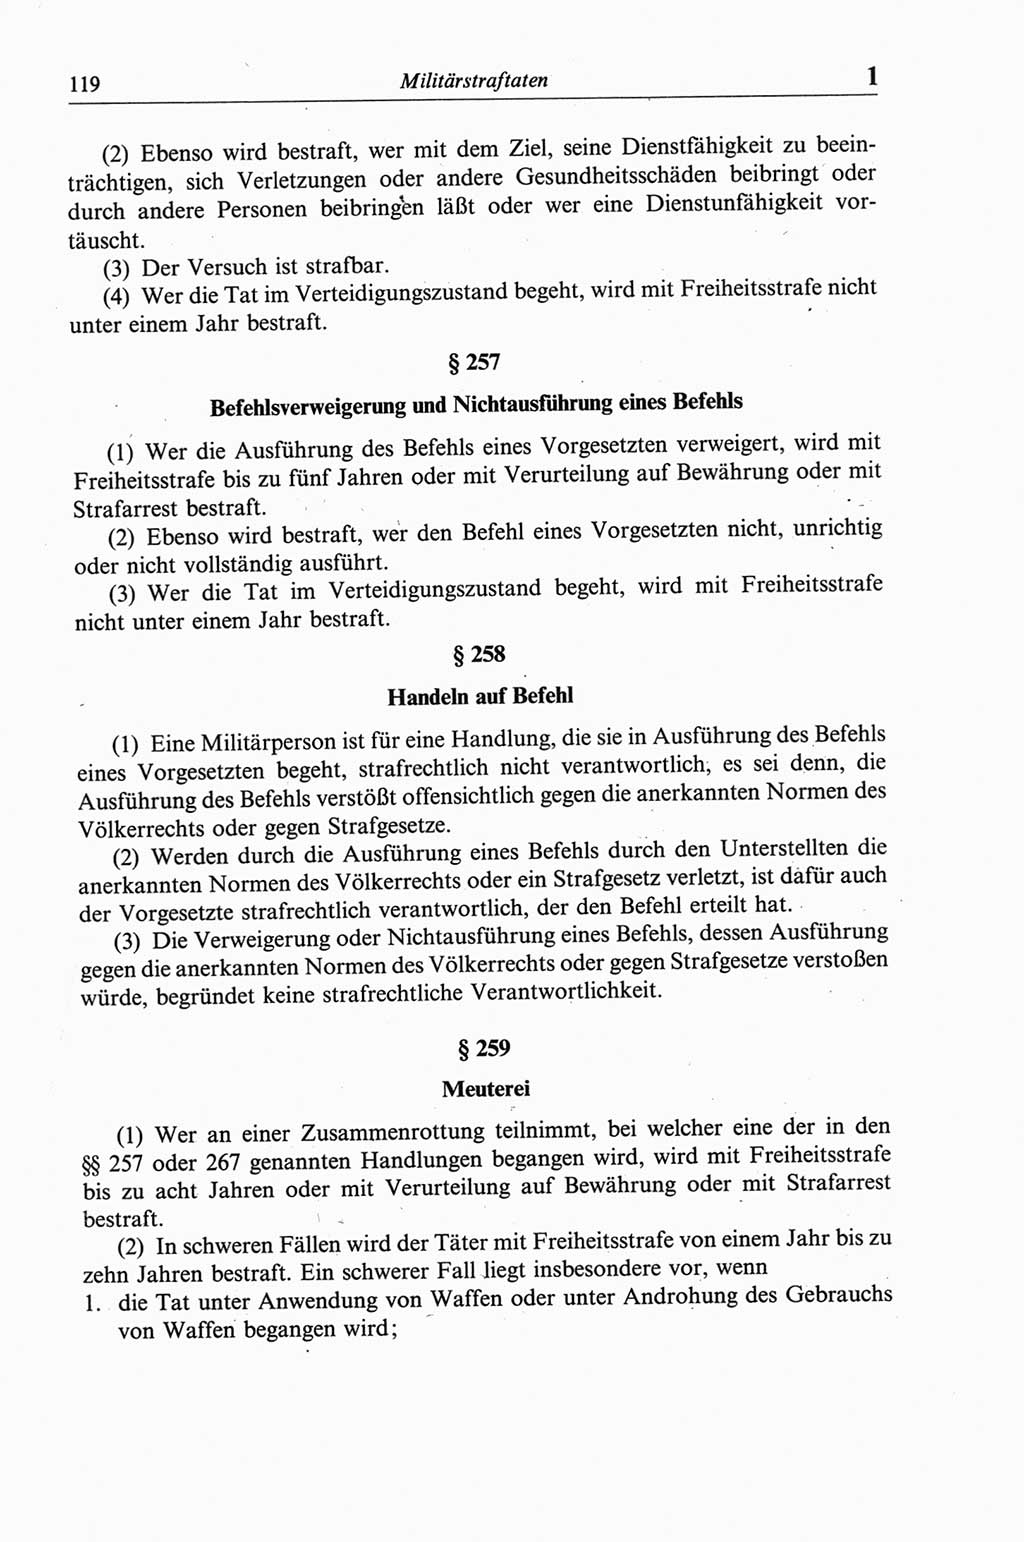 Strafgesetzbuch (StGB) der Deutschen Demokratischen Republik (DDR) und angrenzende Gesetze und Bestimmungen 1968, Seite 119 (StGB Ges. Best. DDR 1968, S. 119)